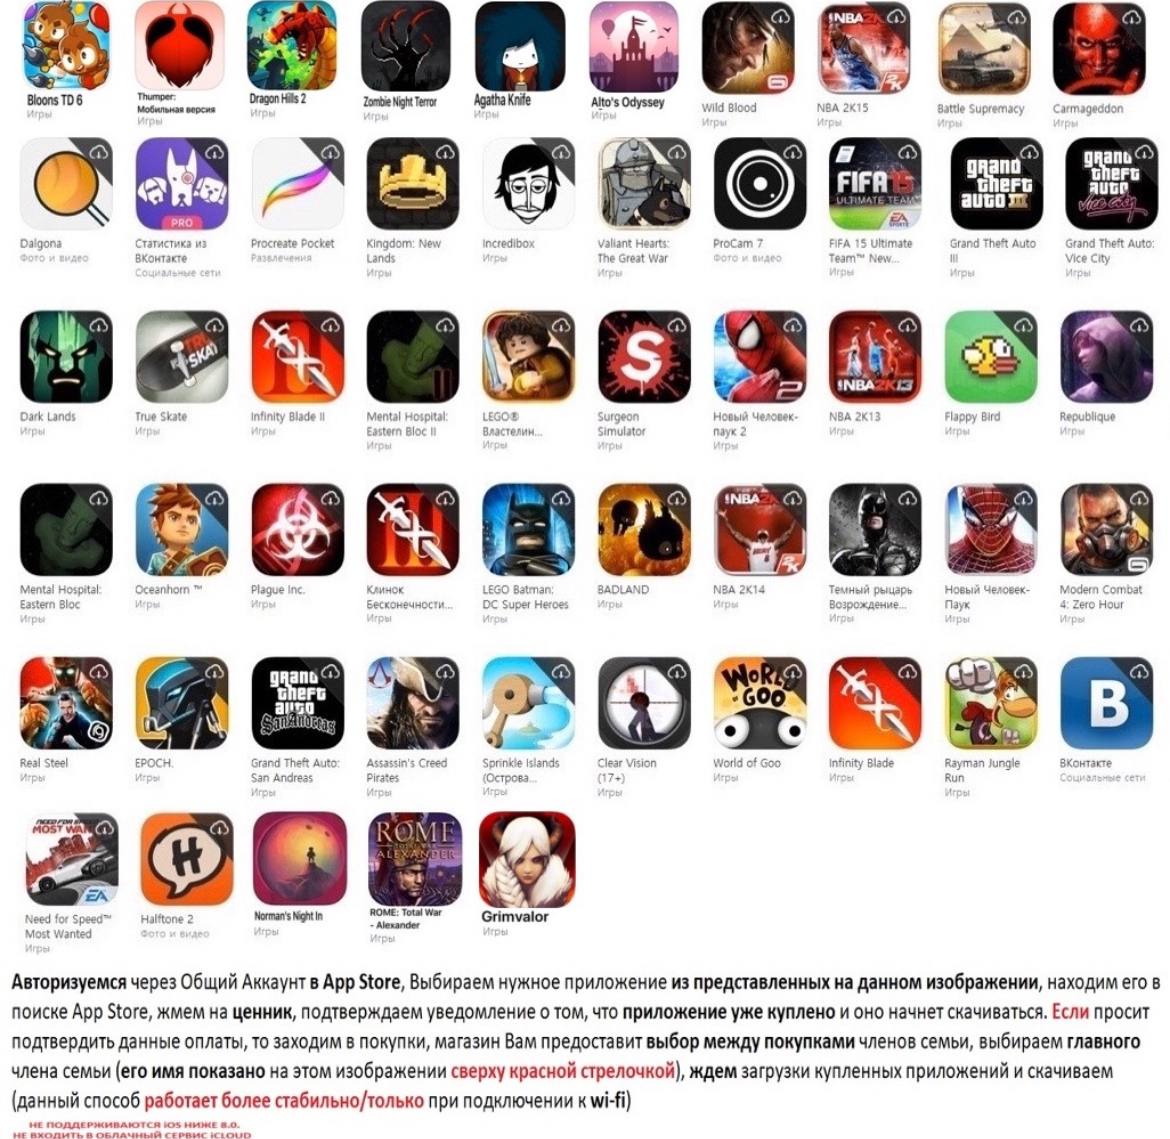 Бесплатный общий аккаунт app store в телеграмме (118) фото